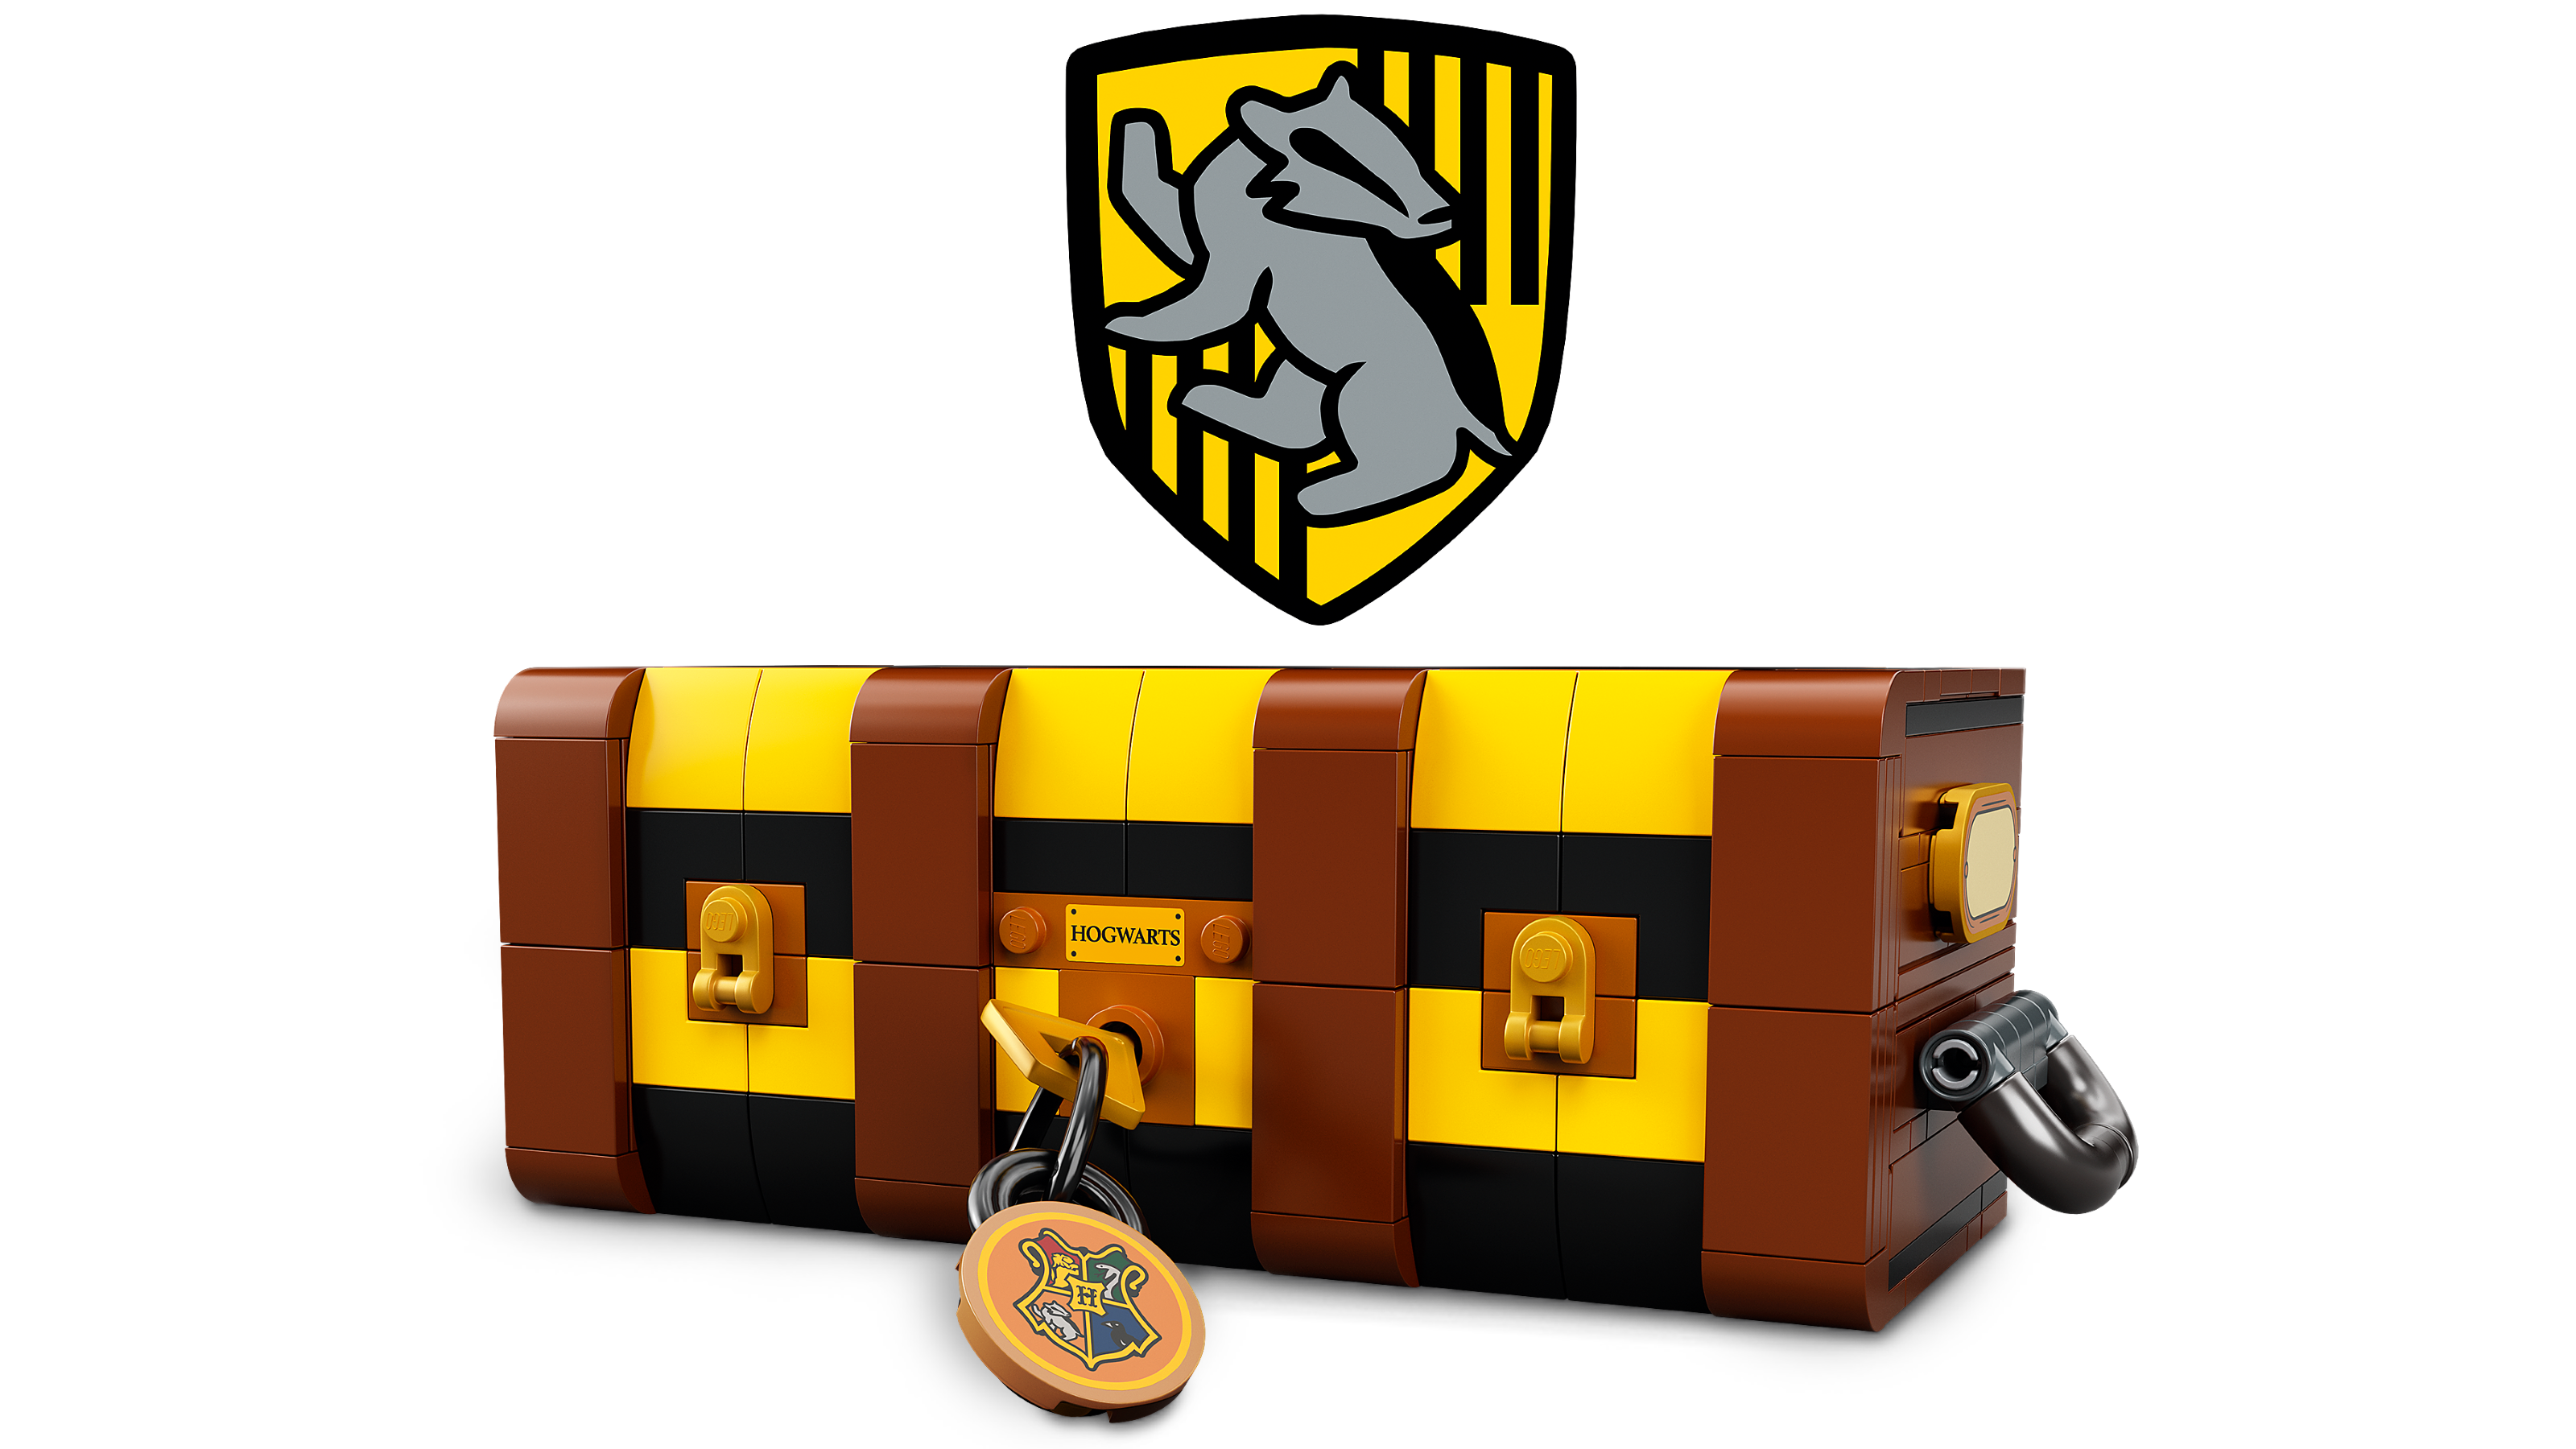 76399 - LEGO® Harry Potter - La Malle Magique de Poudlard LEGO : King  Jouet, Lego, briques et blocs LEGO - Jeux de construction